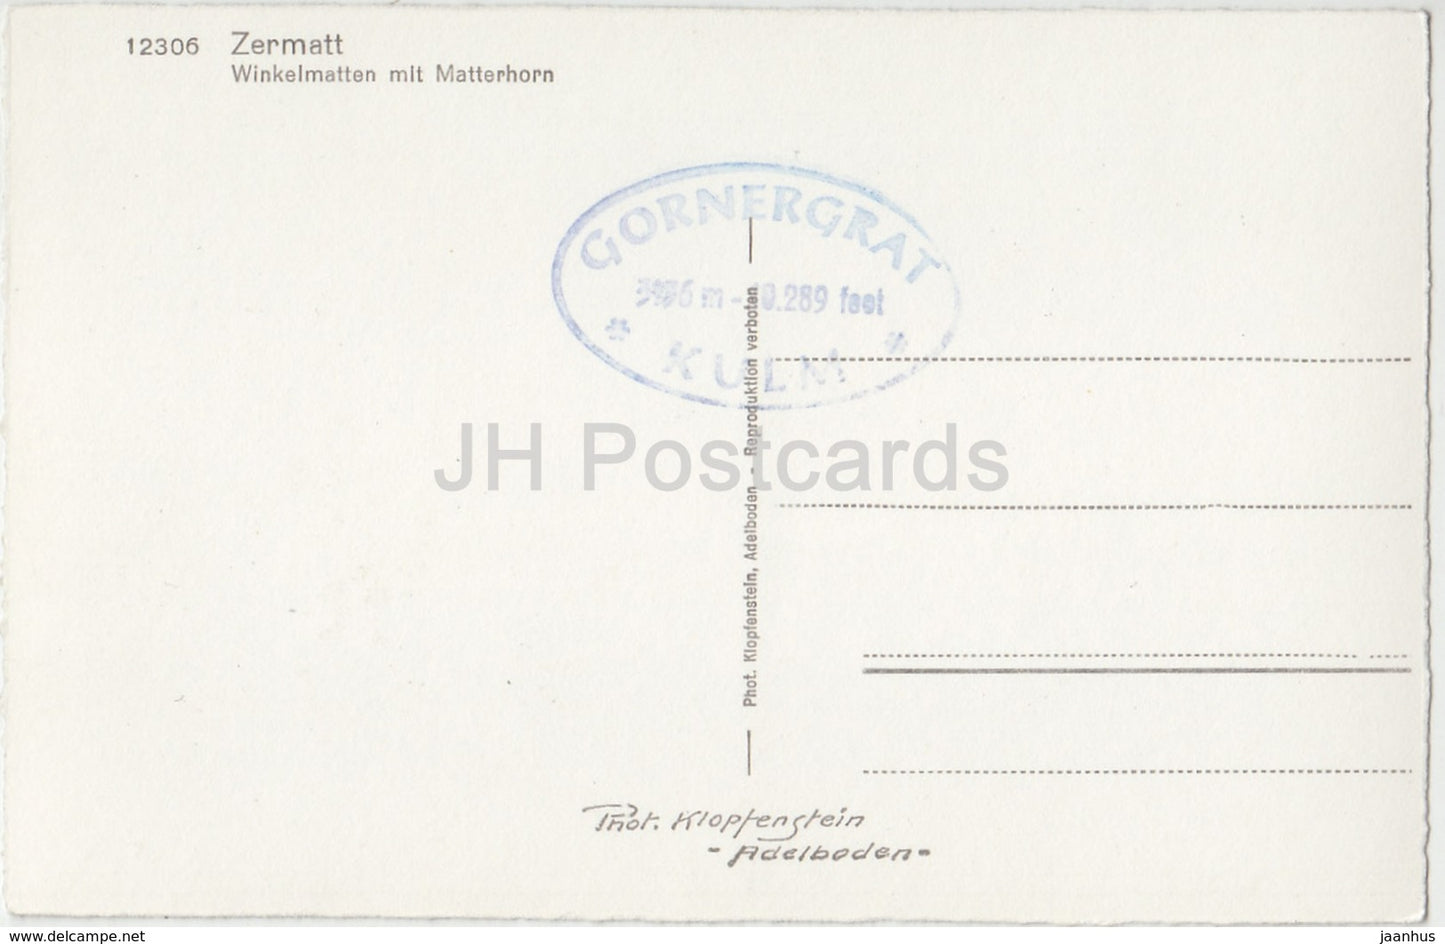 Zermatt - Winkelmatten mit Mattehorn - 12306 - Schweiz - alte Postkarte - unbenutzt